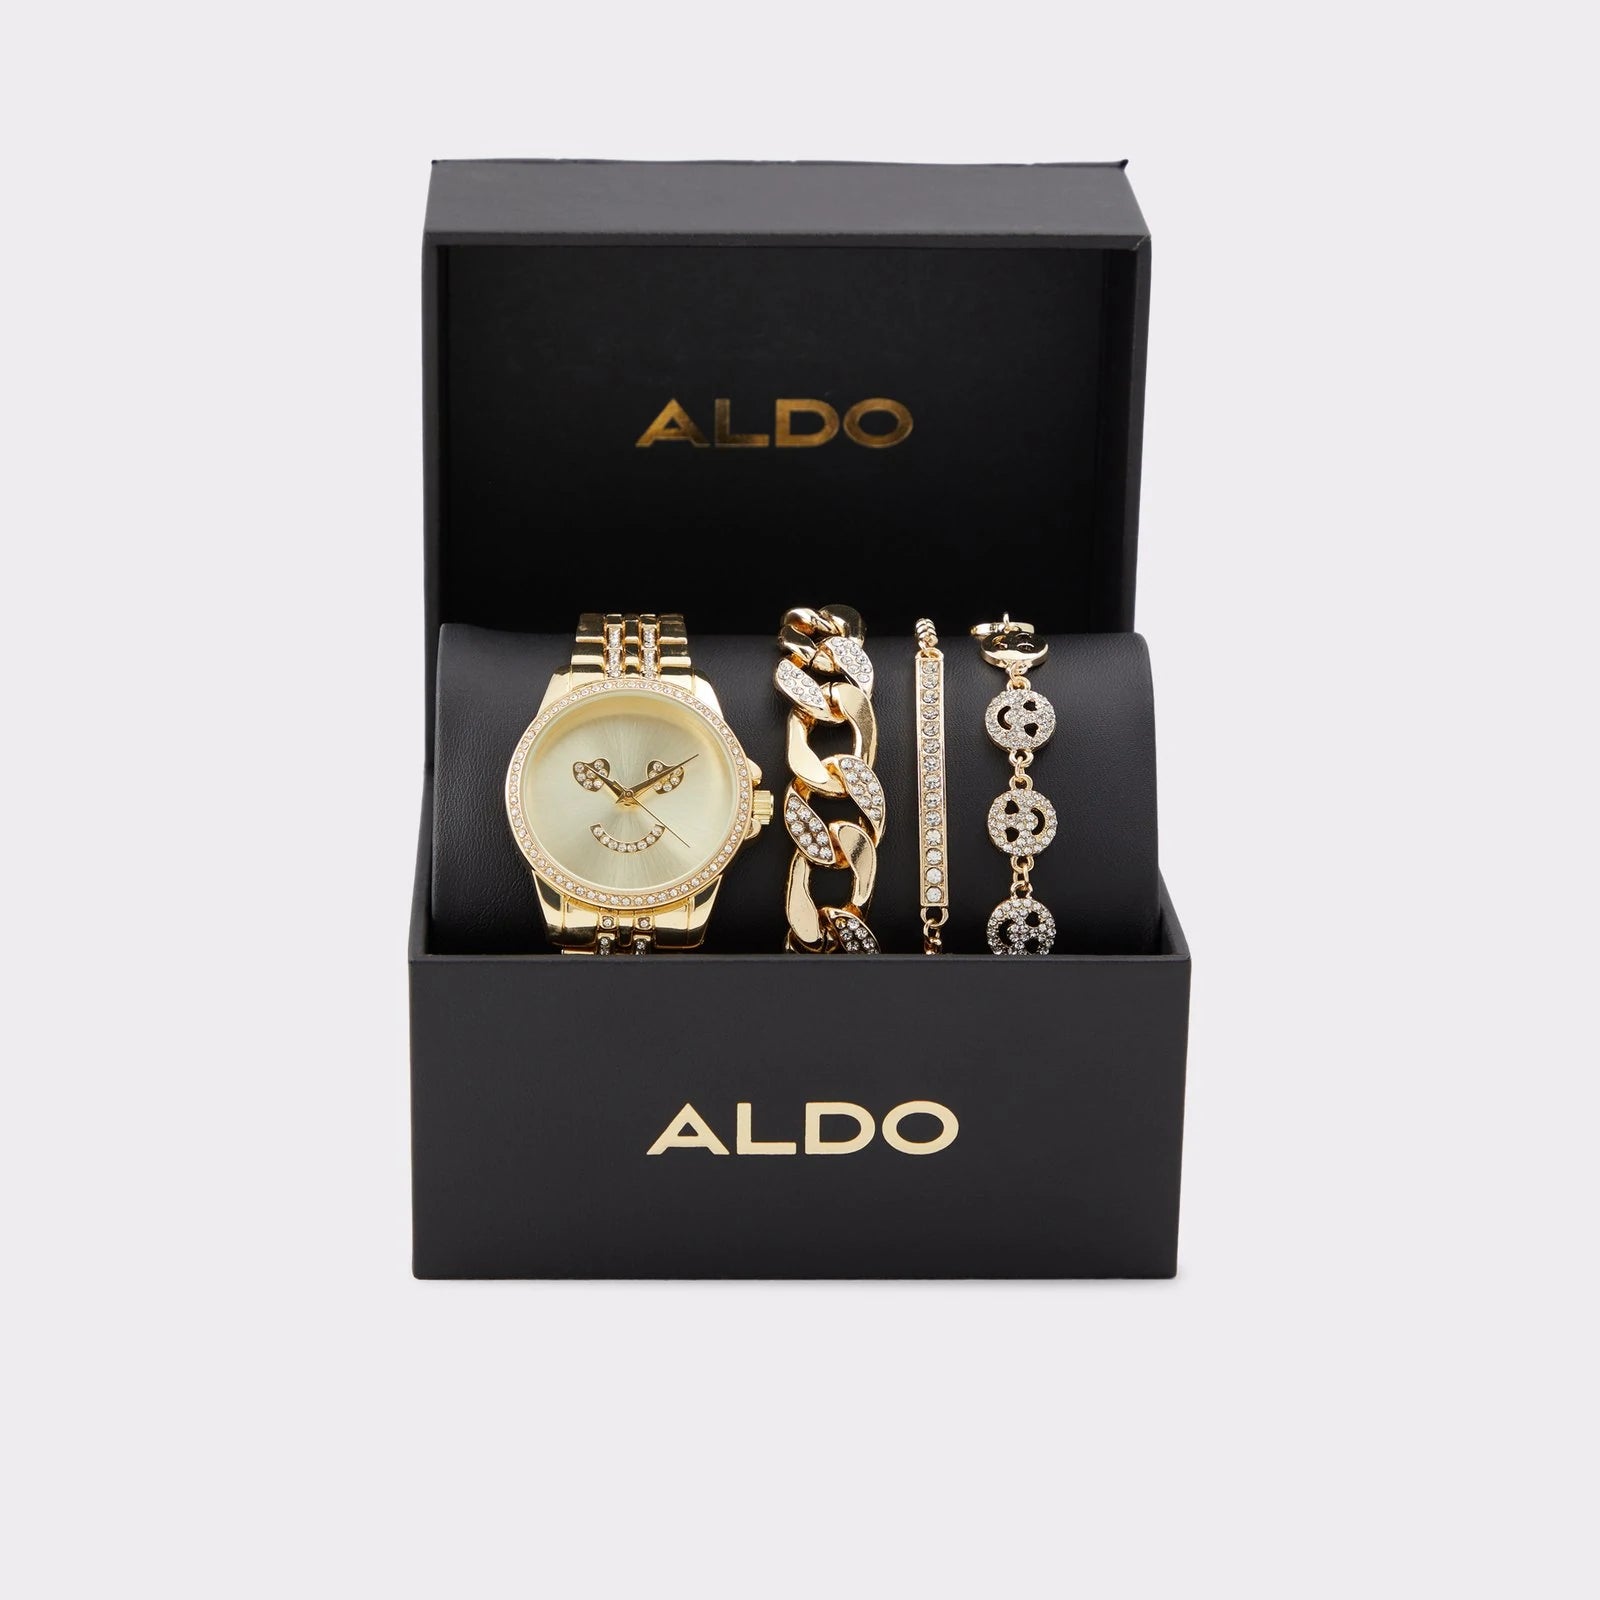 Aldo watch